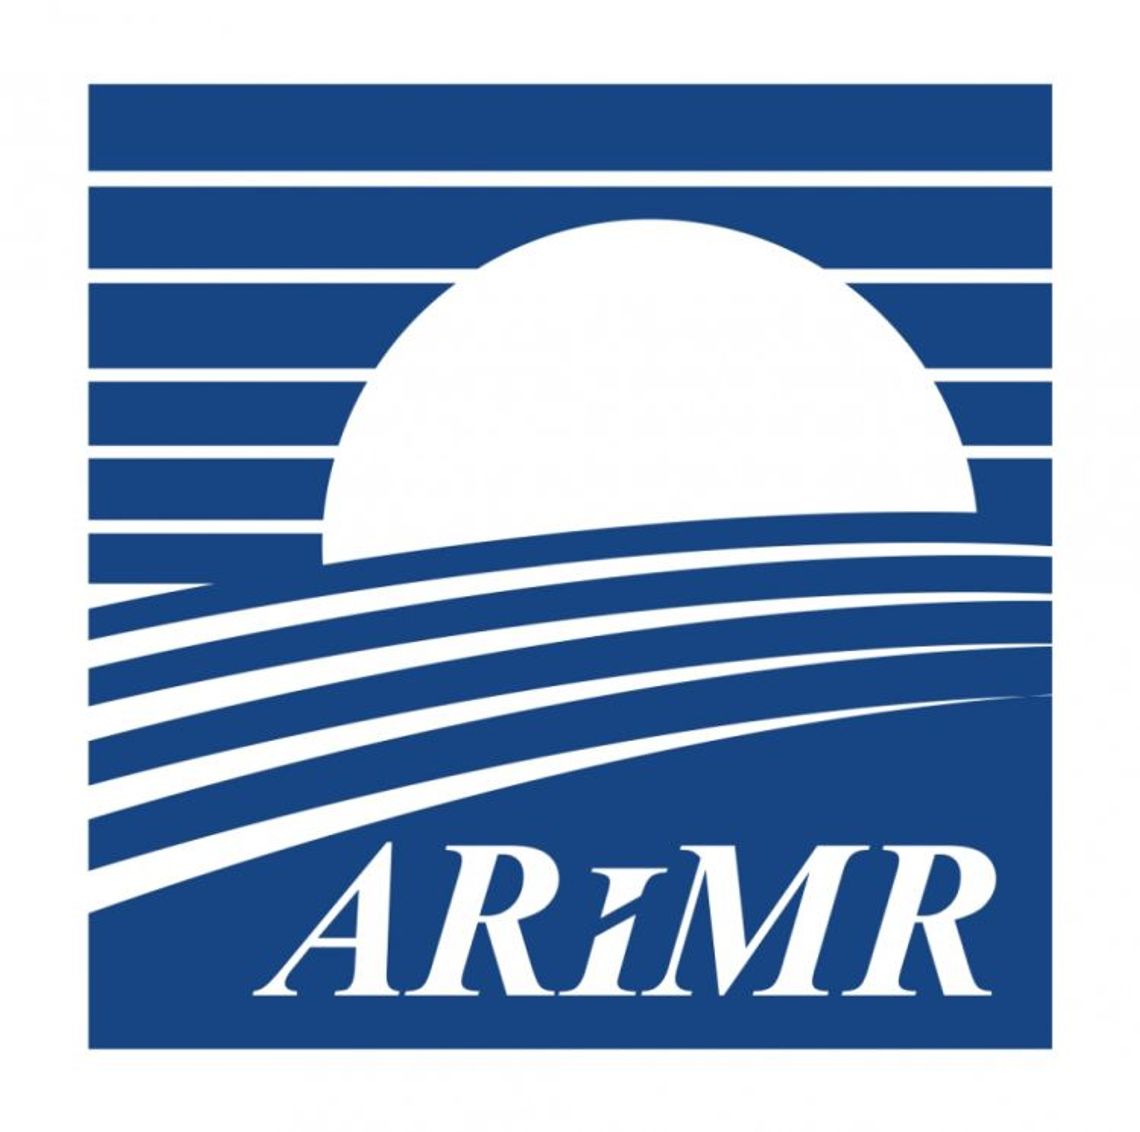 Dopłaty 2020: ARiMR przyjmuje oświadczenia od 2 marca